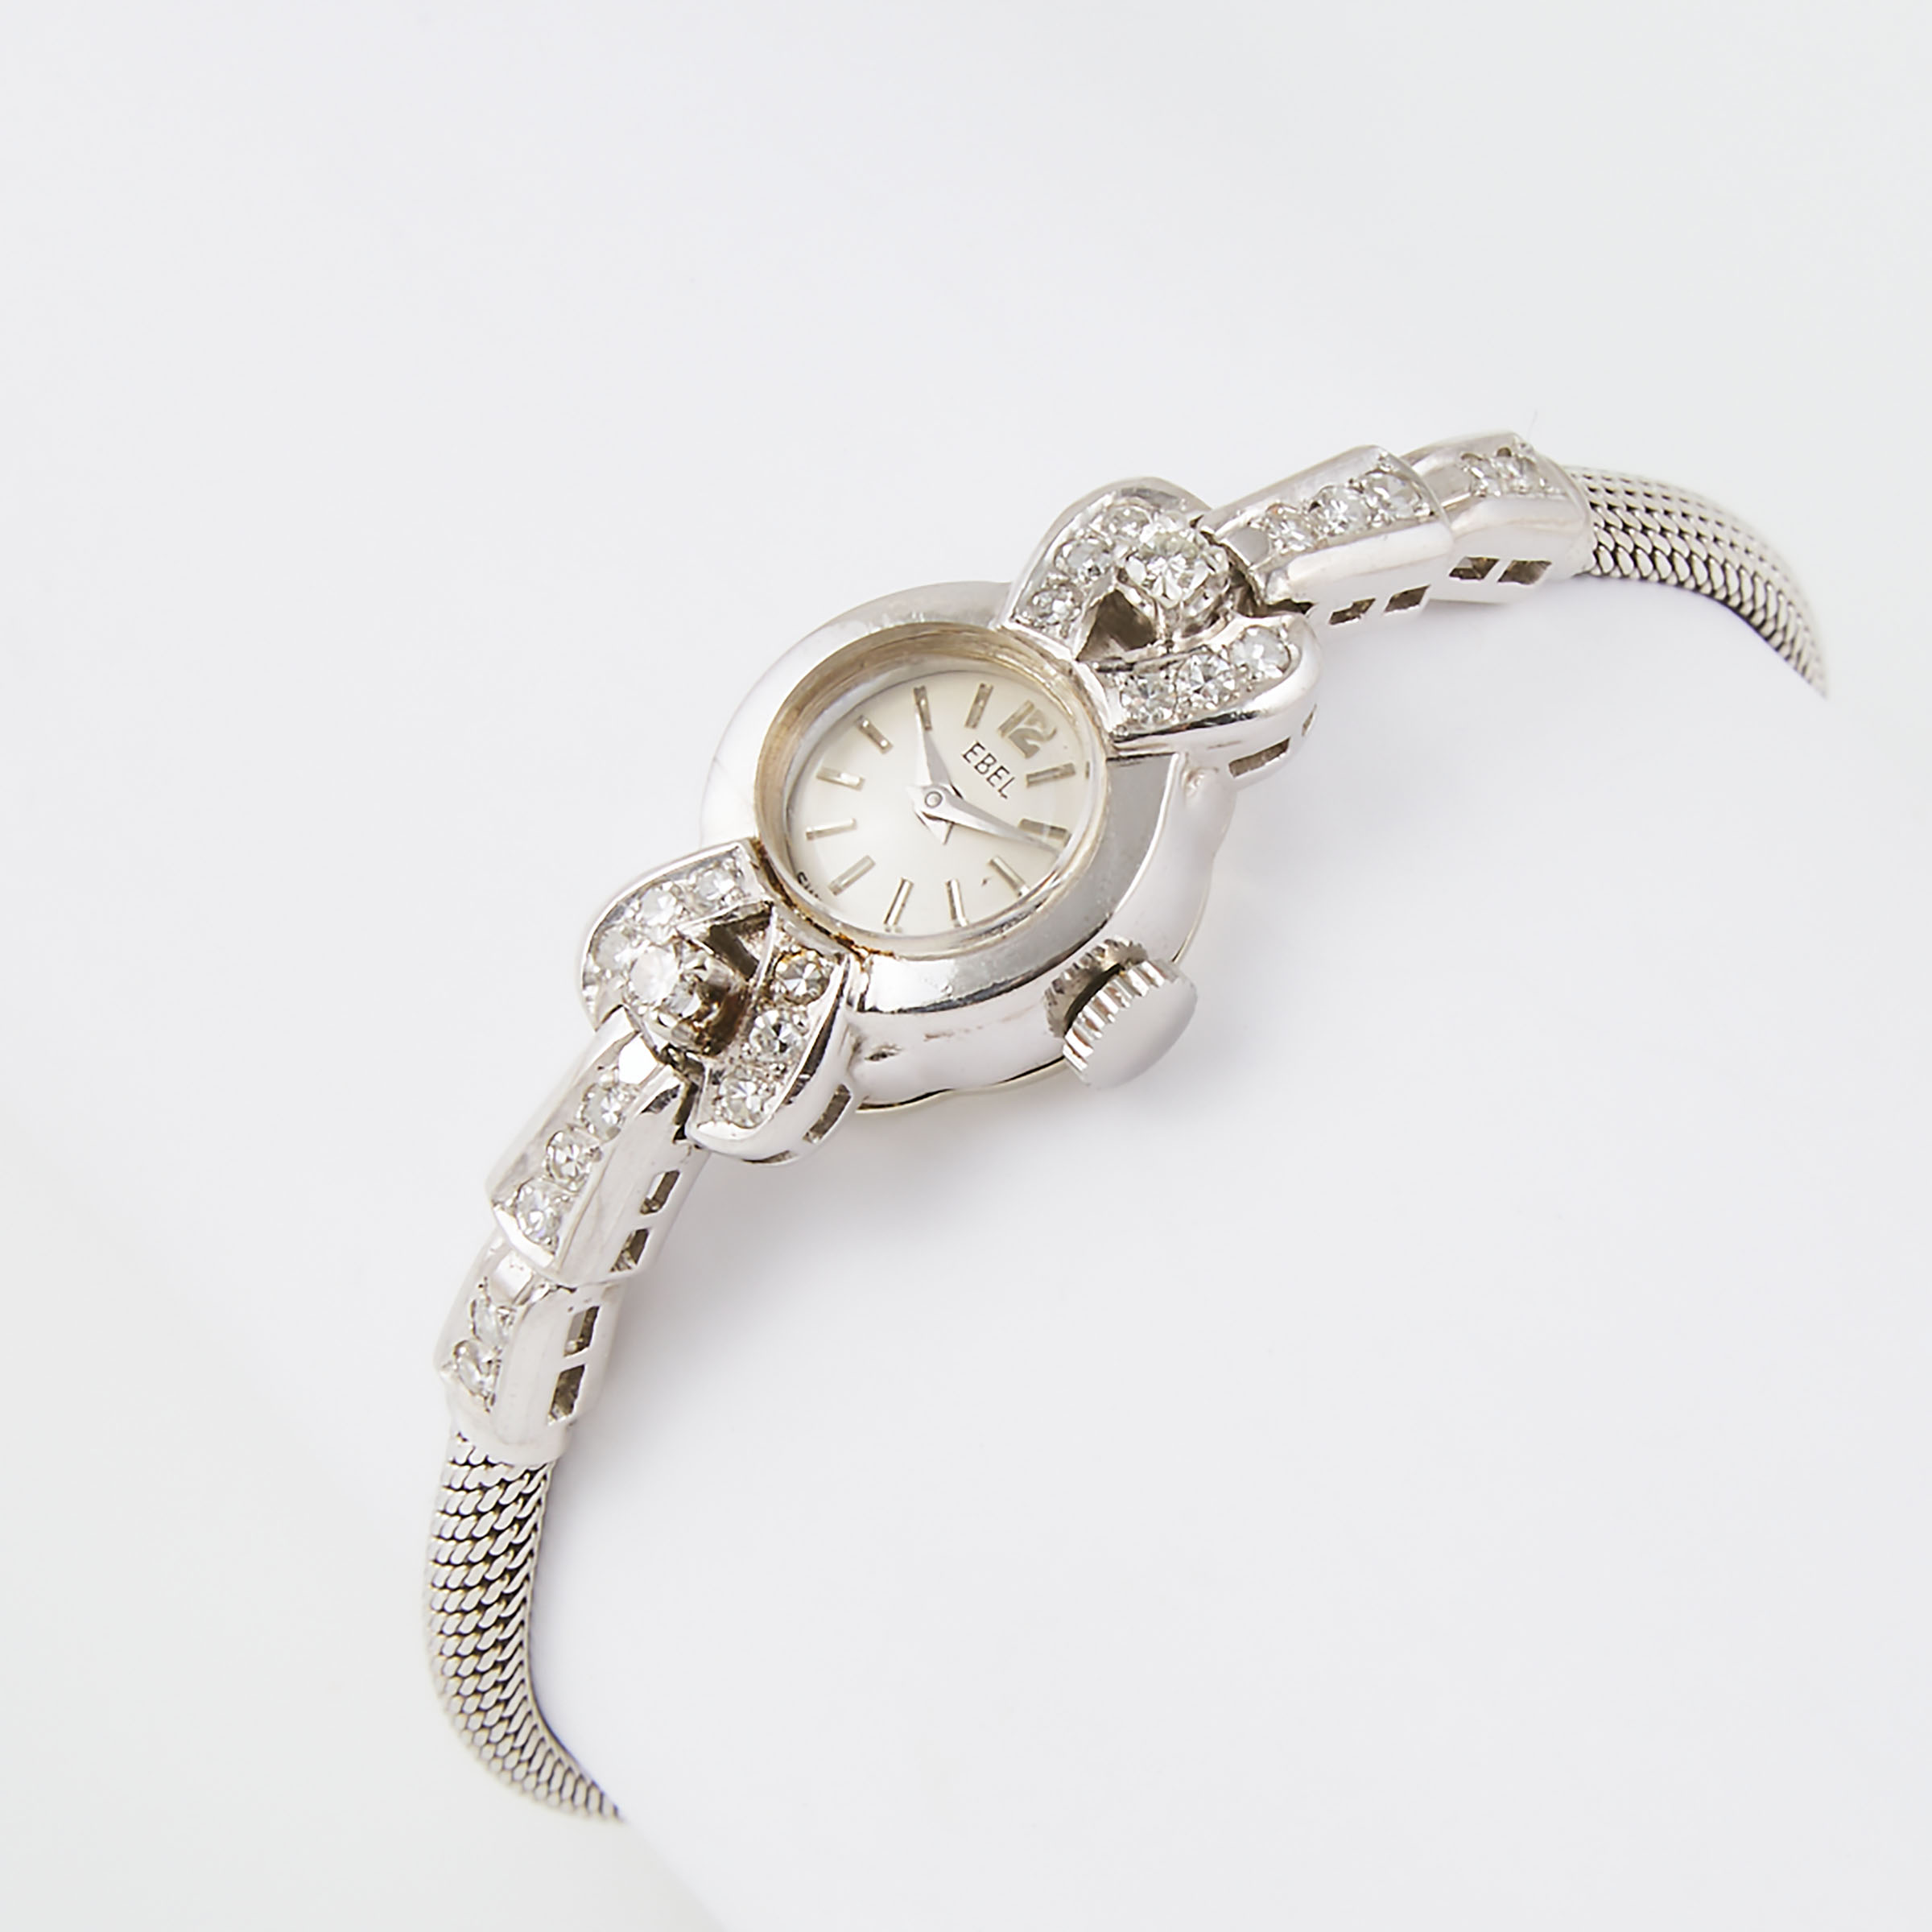 Lady's Ebel Wristwatch